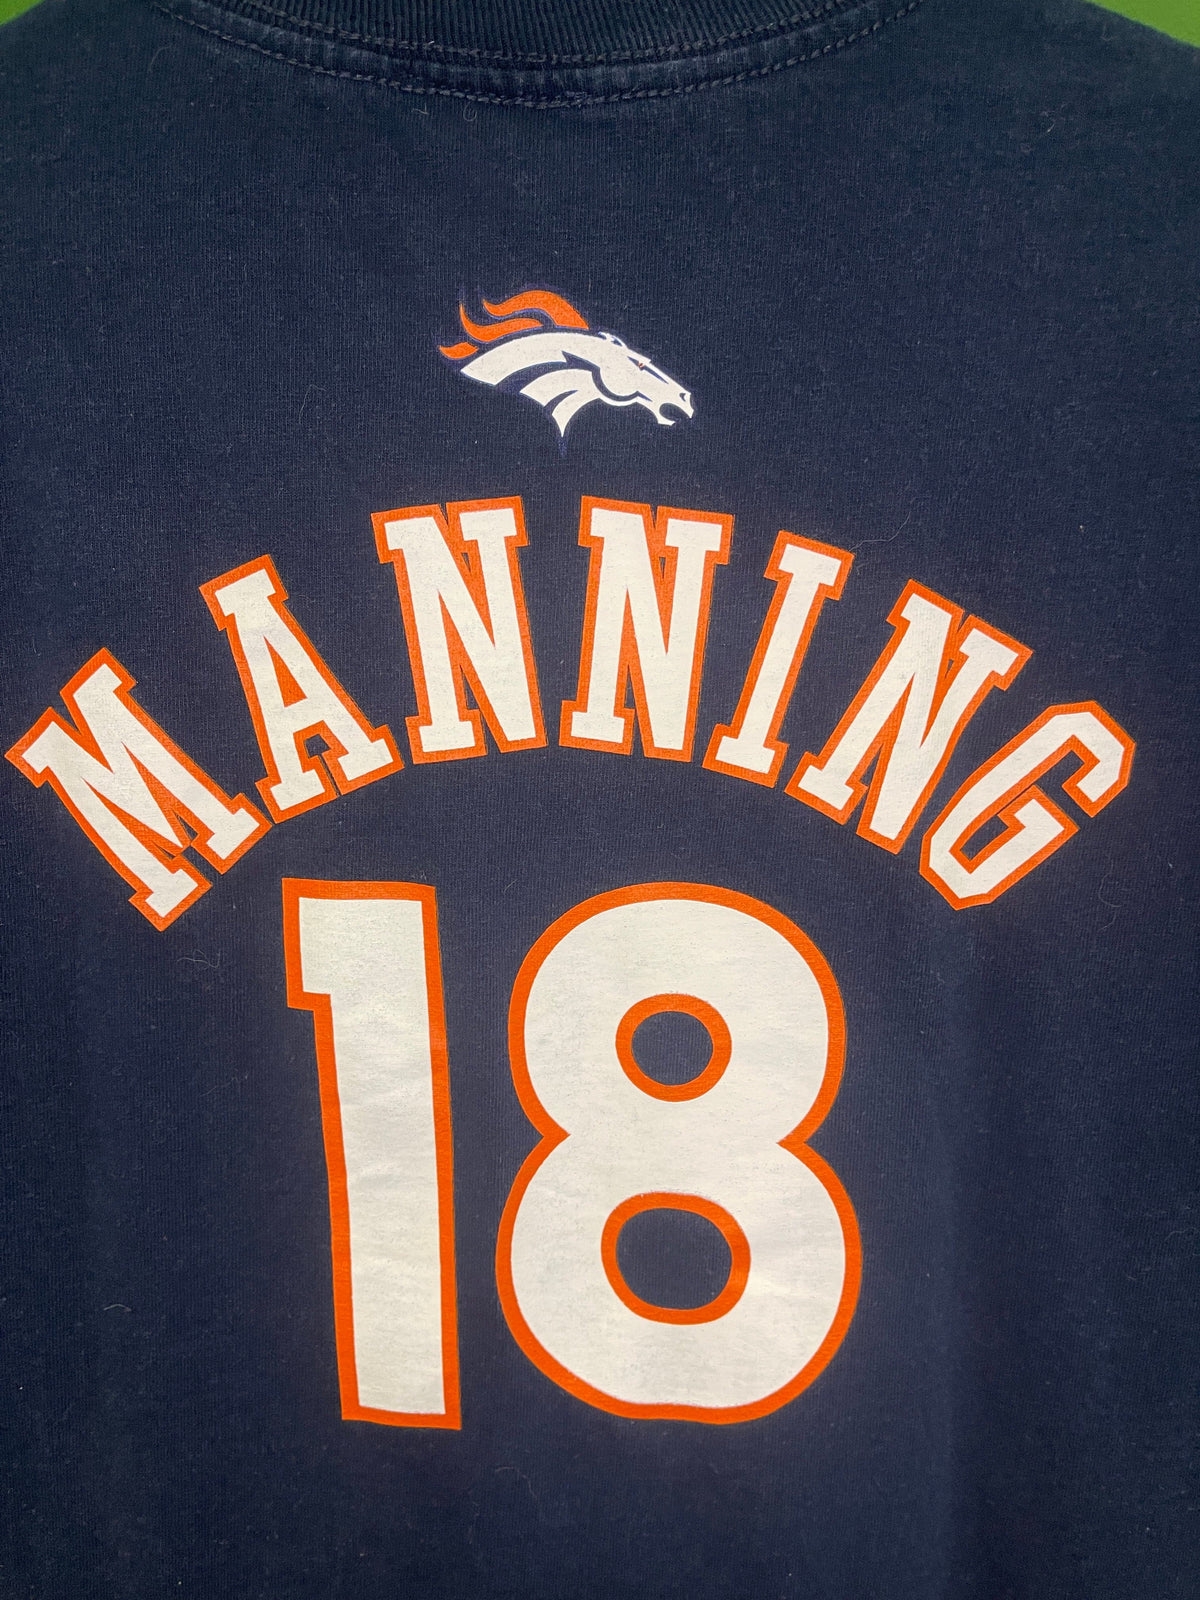 NFL Denver Broncos Peyton Manning #18 100% Cotton T-Shirt Youth Large 14-16